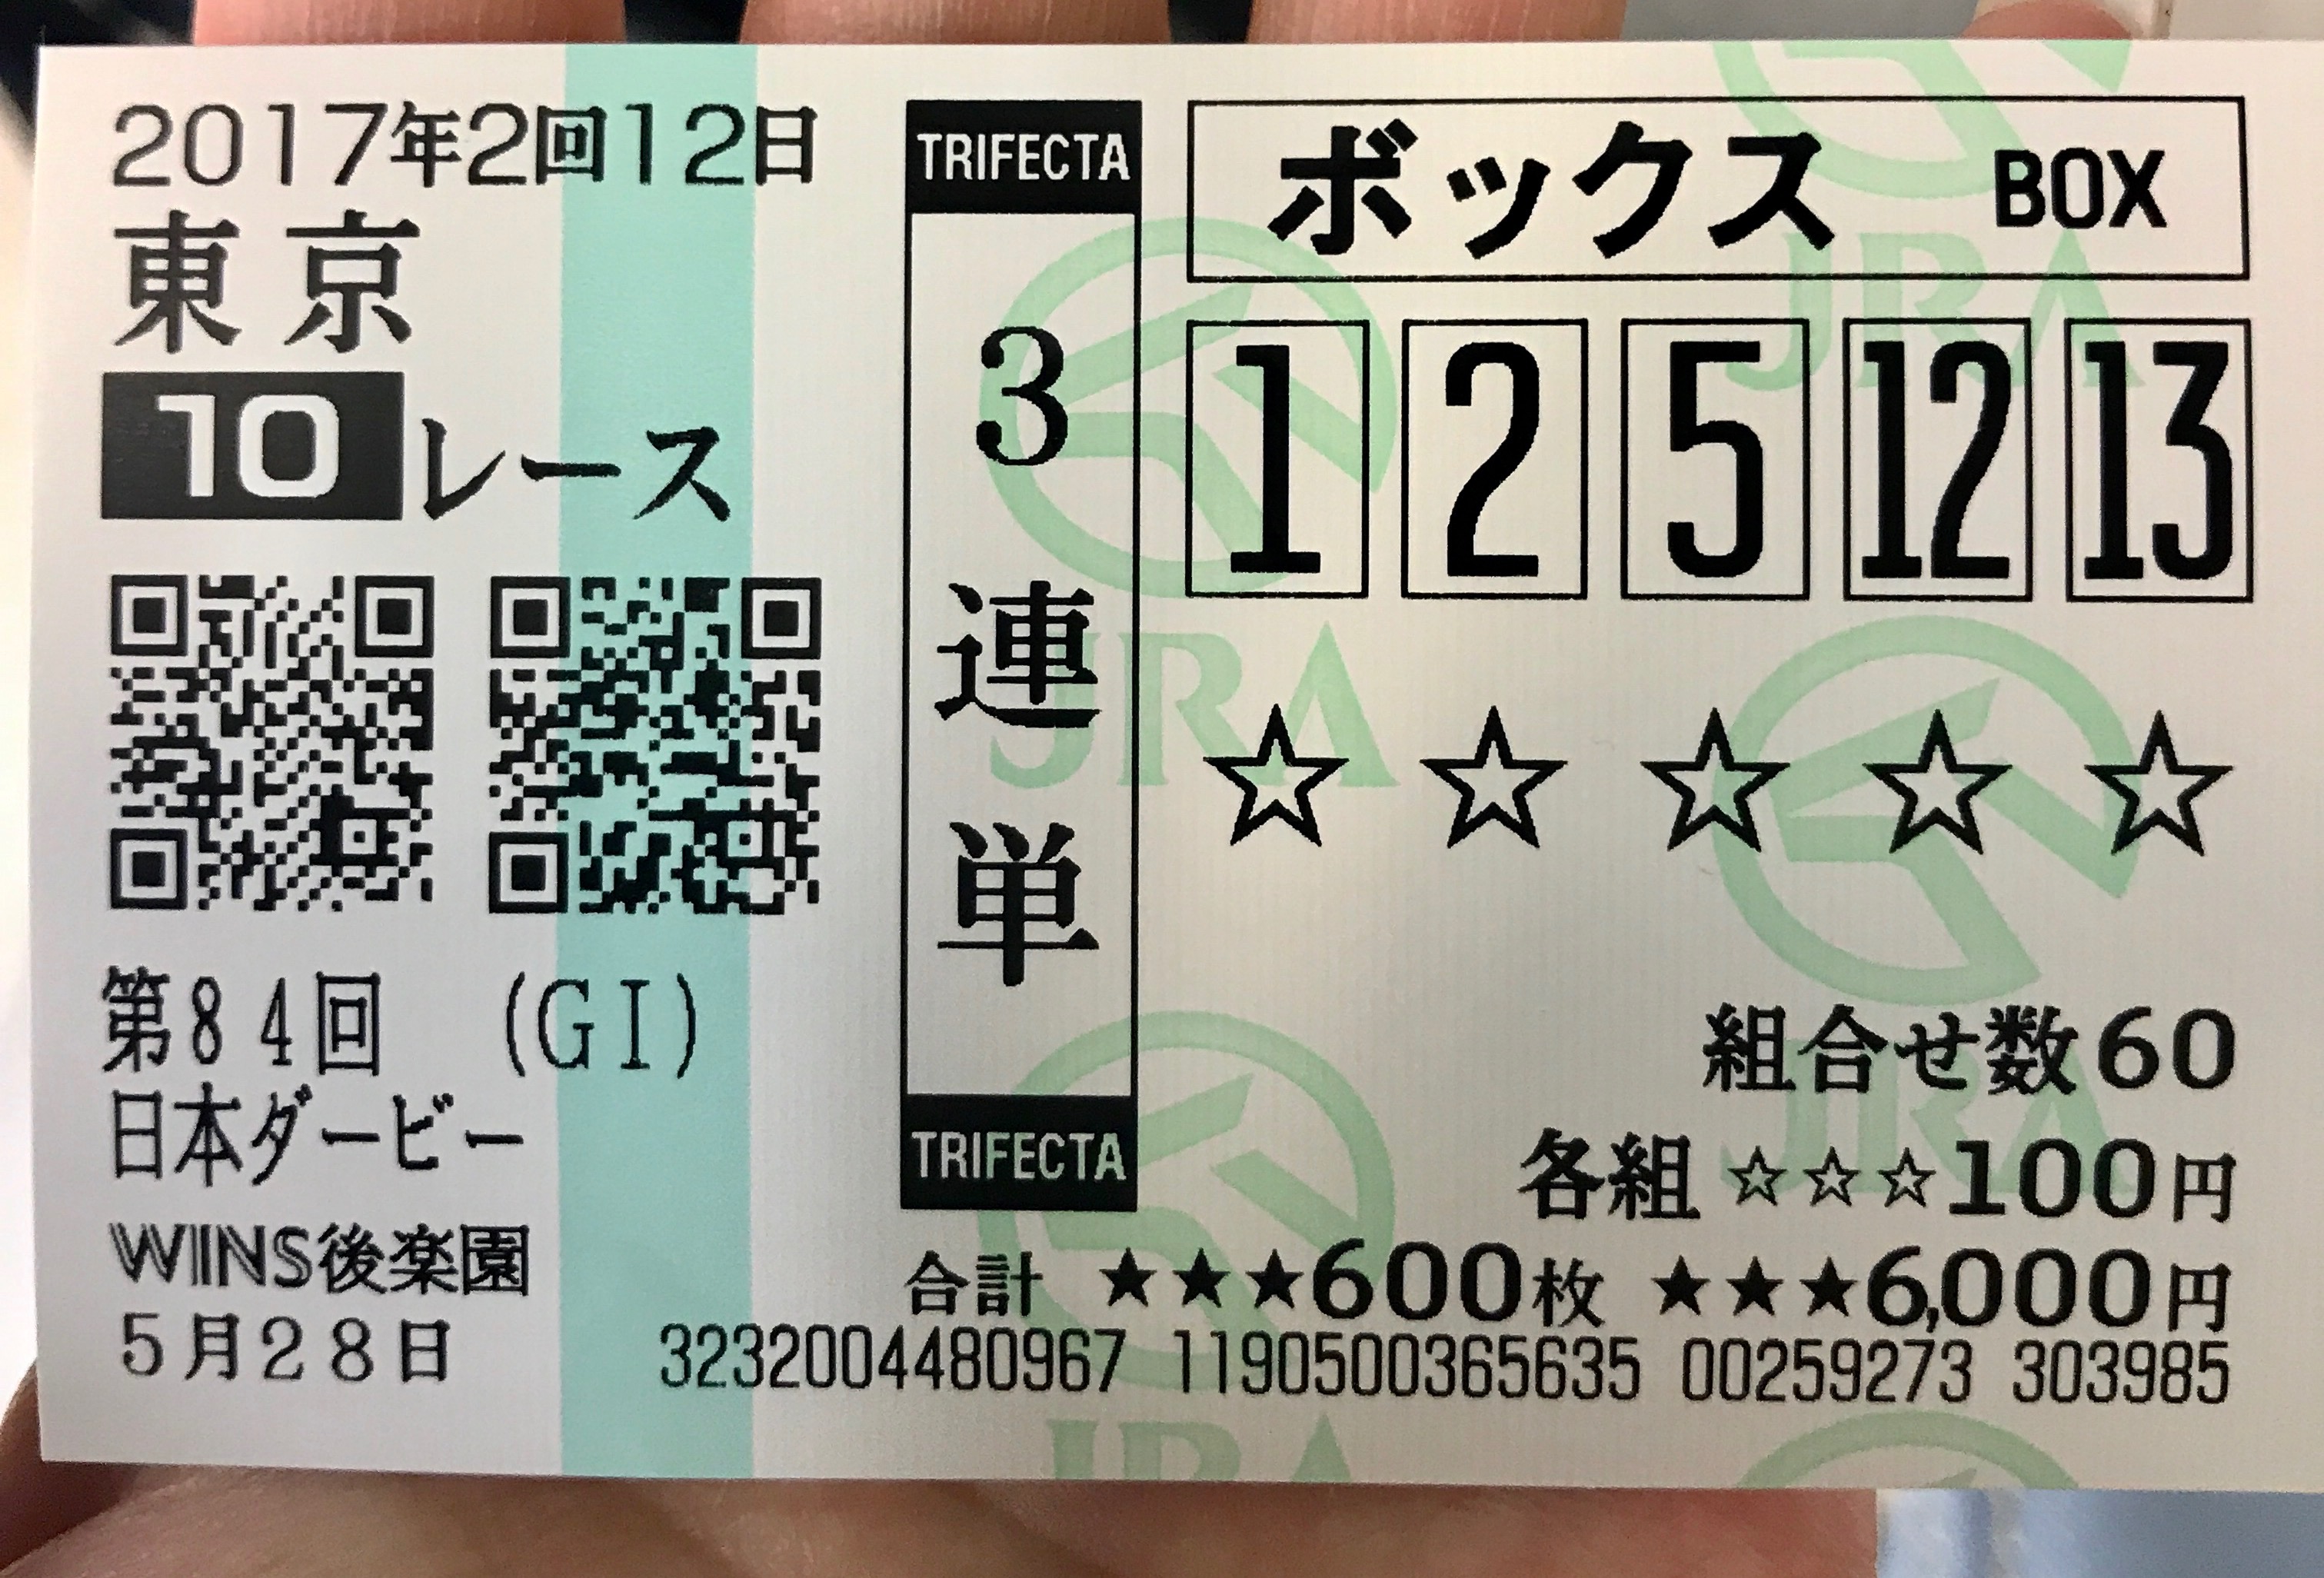 GIレース日本ダービーの馬券の画像